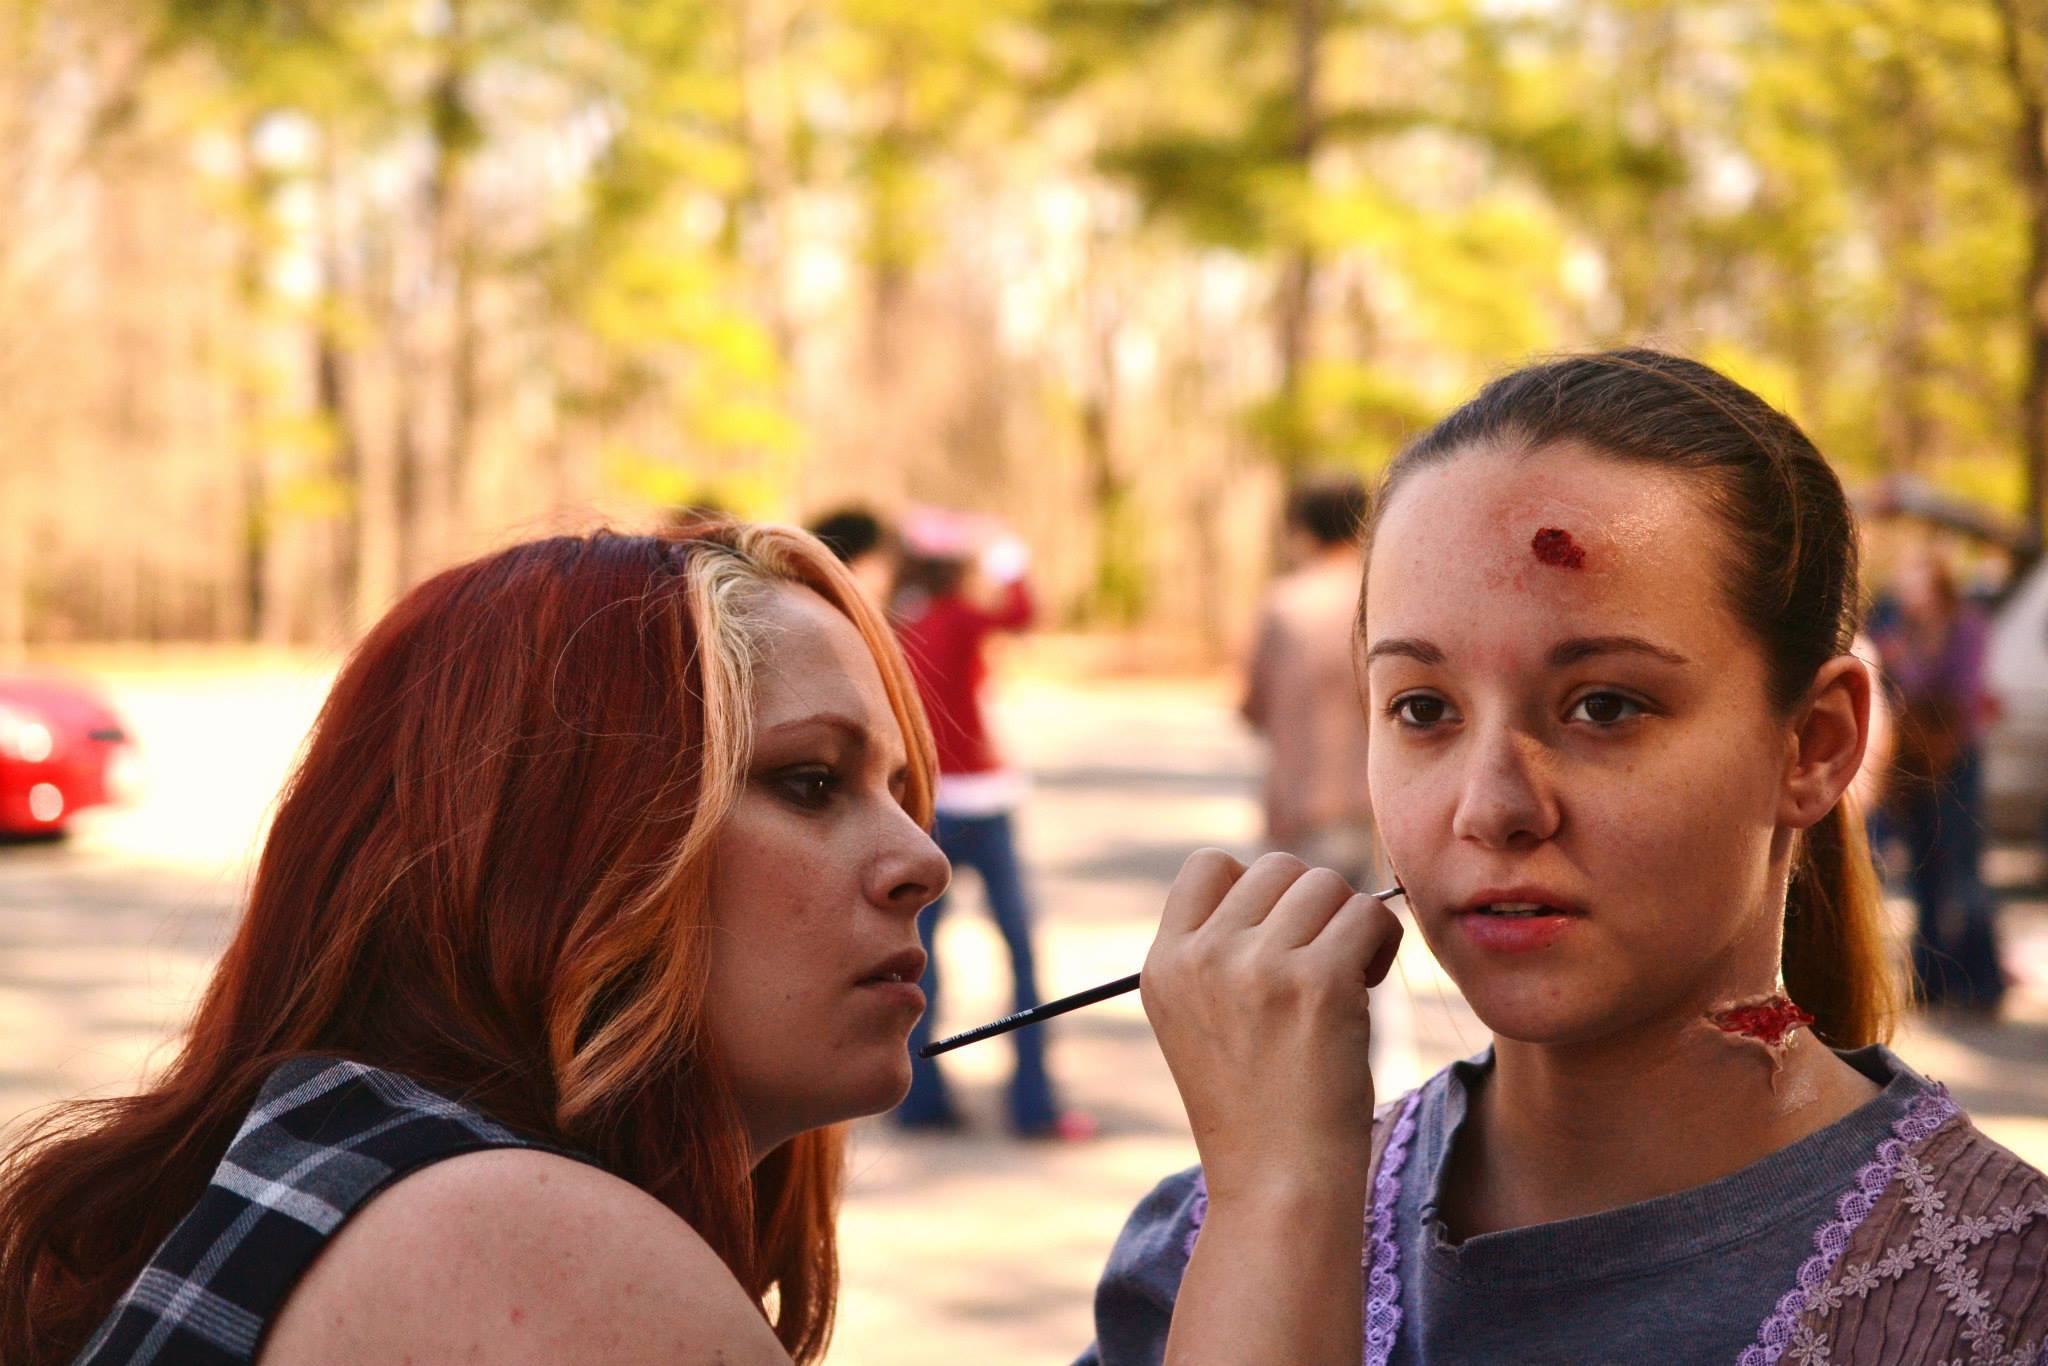 Doing makeup on zombie isle